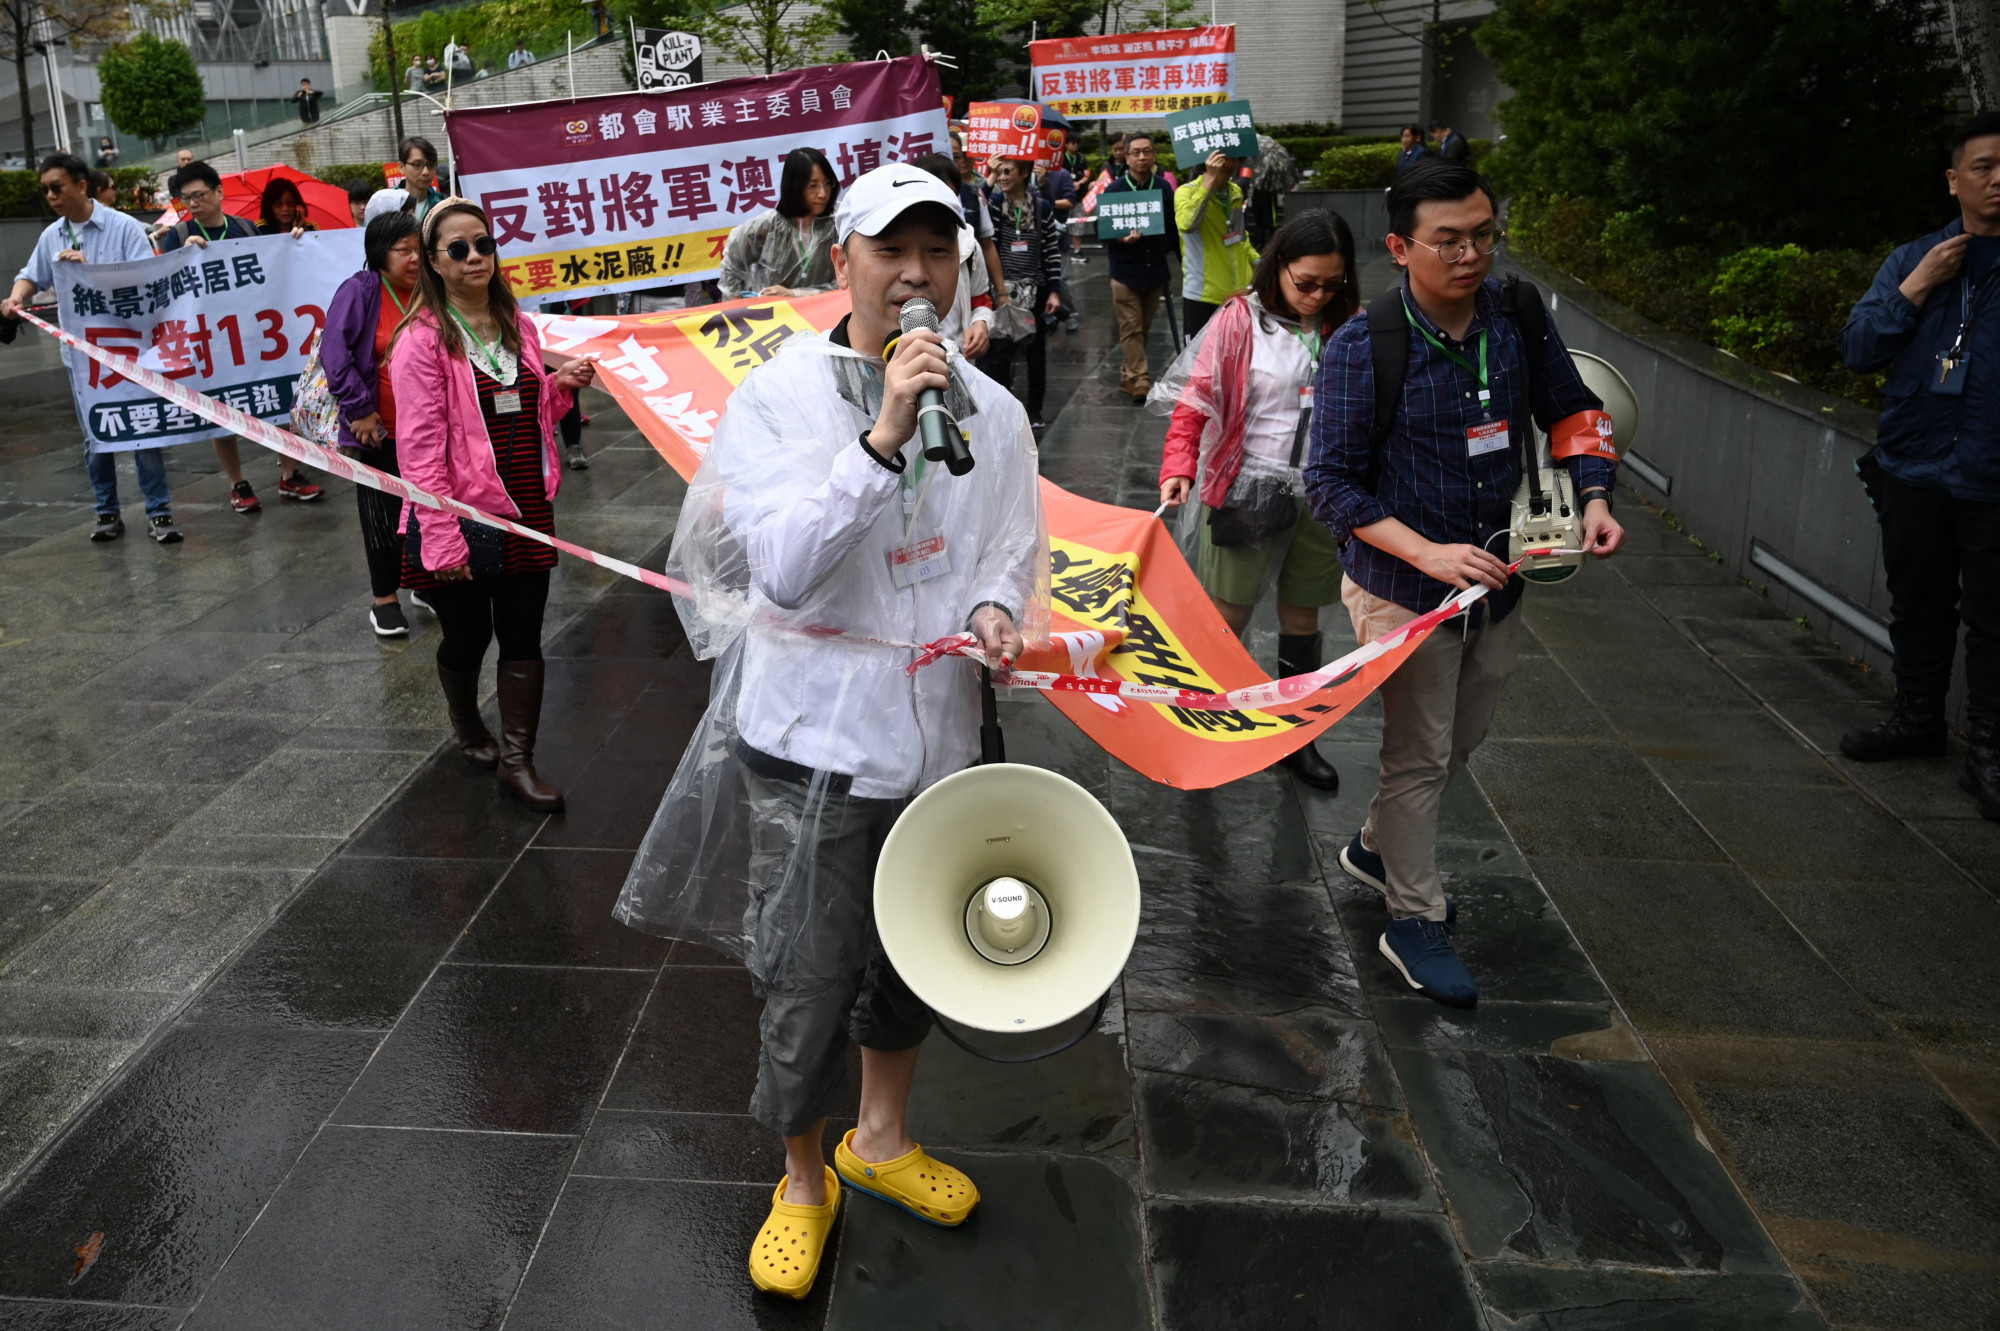 Sorszám a nyakban, ellenőrzött transzparensek: három év után engedélyeztek egy tüntetést Hongkongban